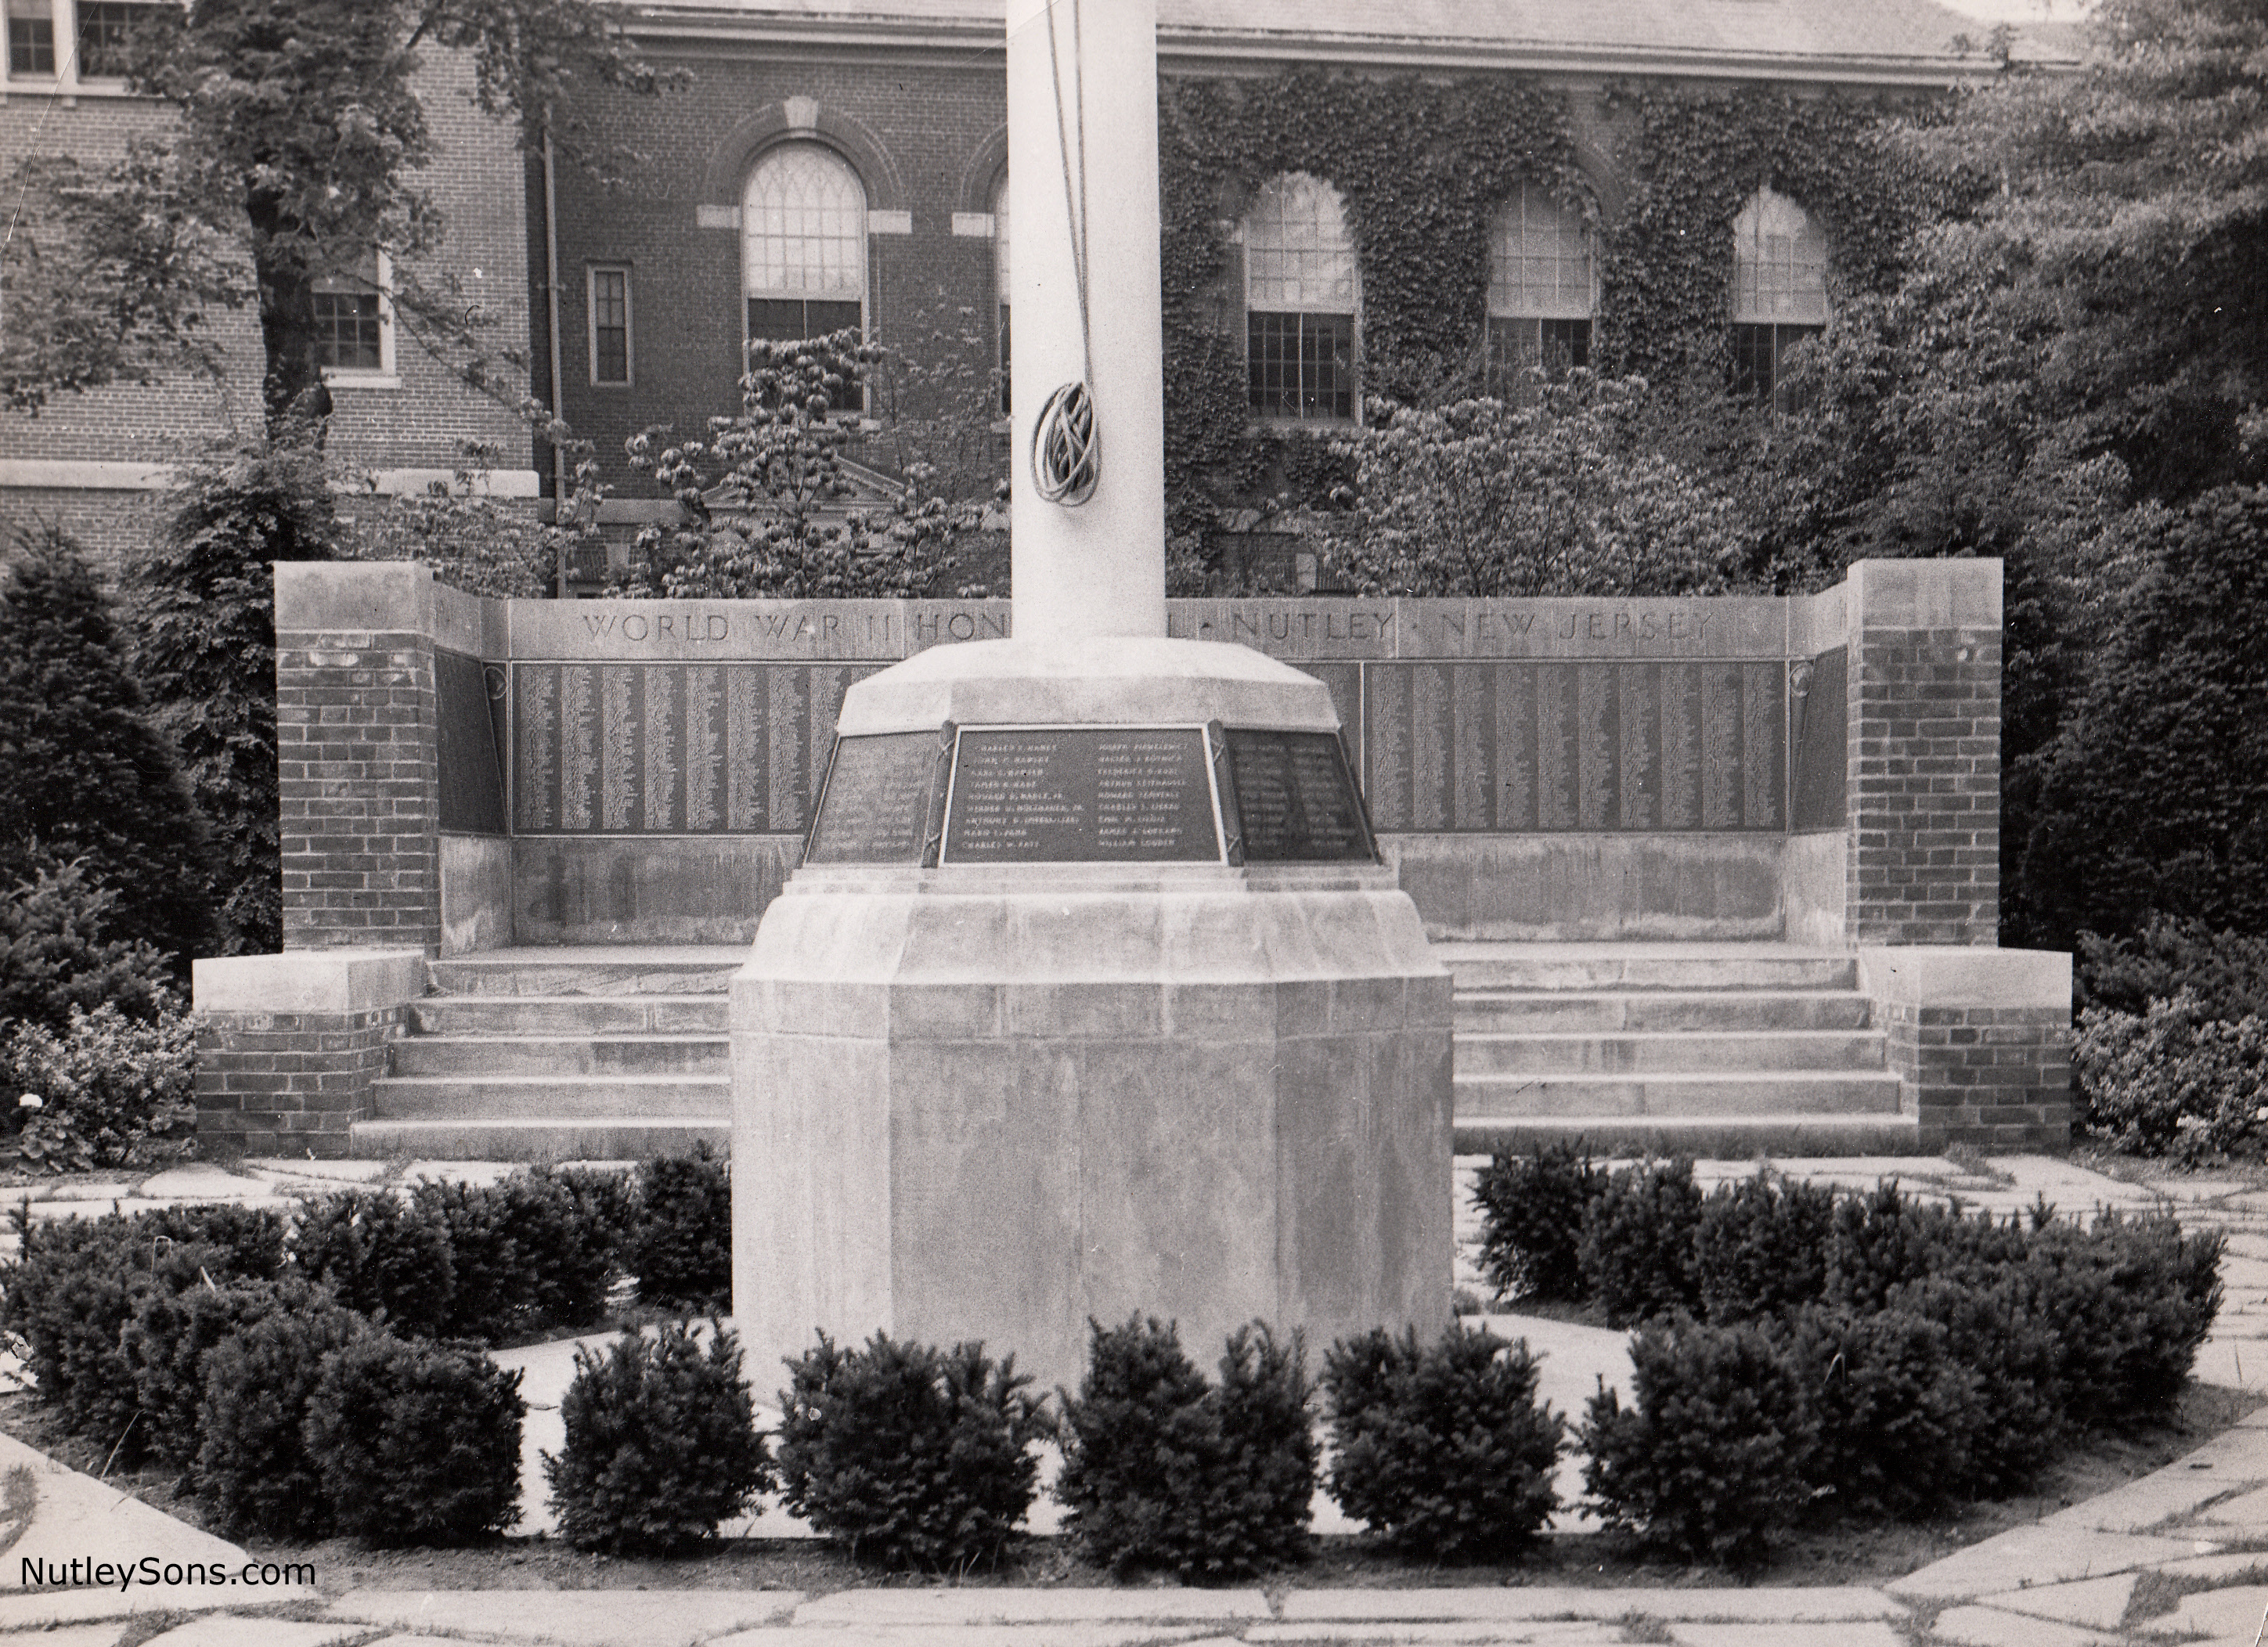 The Memorial Green, WW2 memorial, Nutley NJ